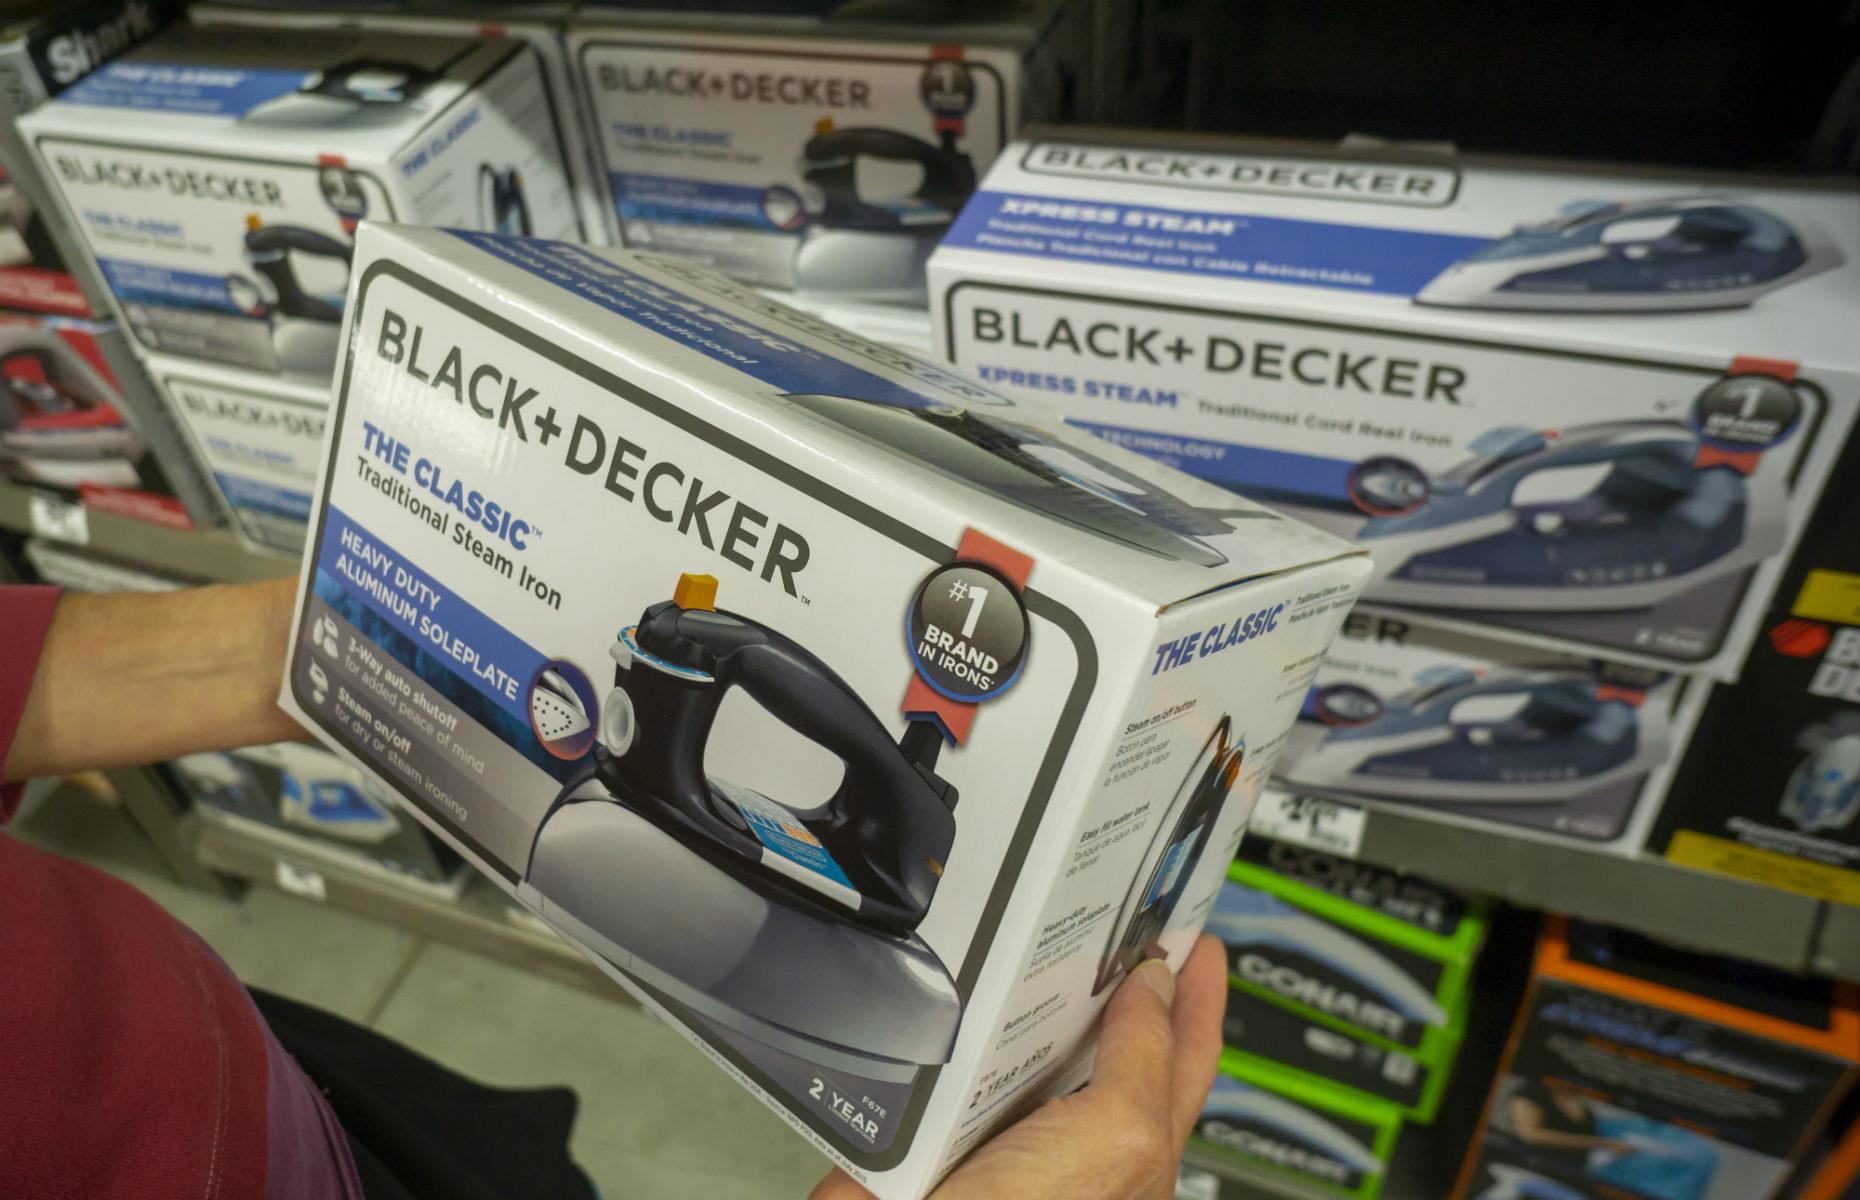 Black & Decker tools